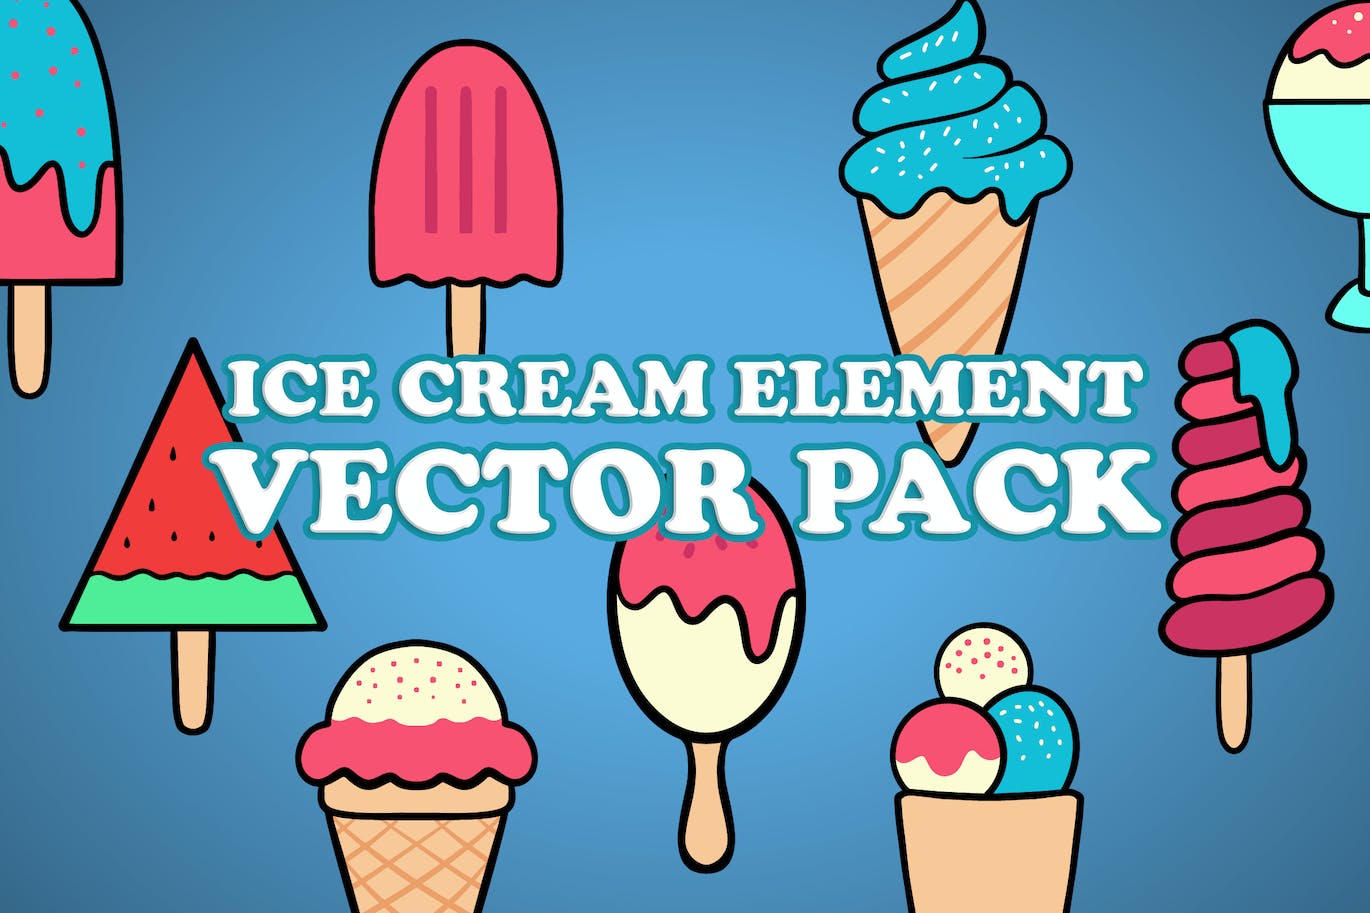 冰淇淋元素矢量插画 Ice Cream Element Vector Pack Illustration-1